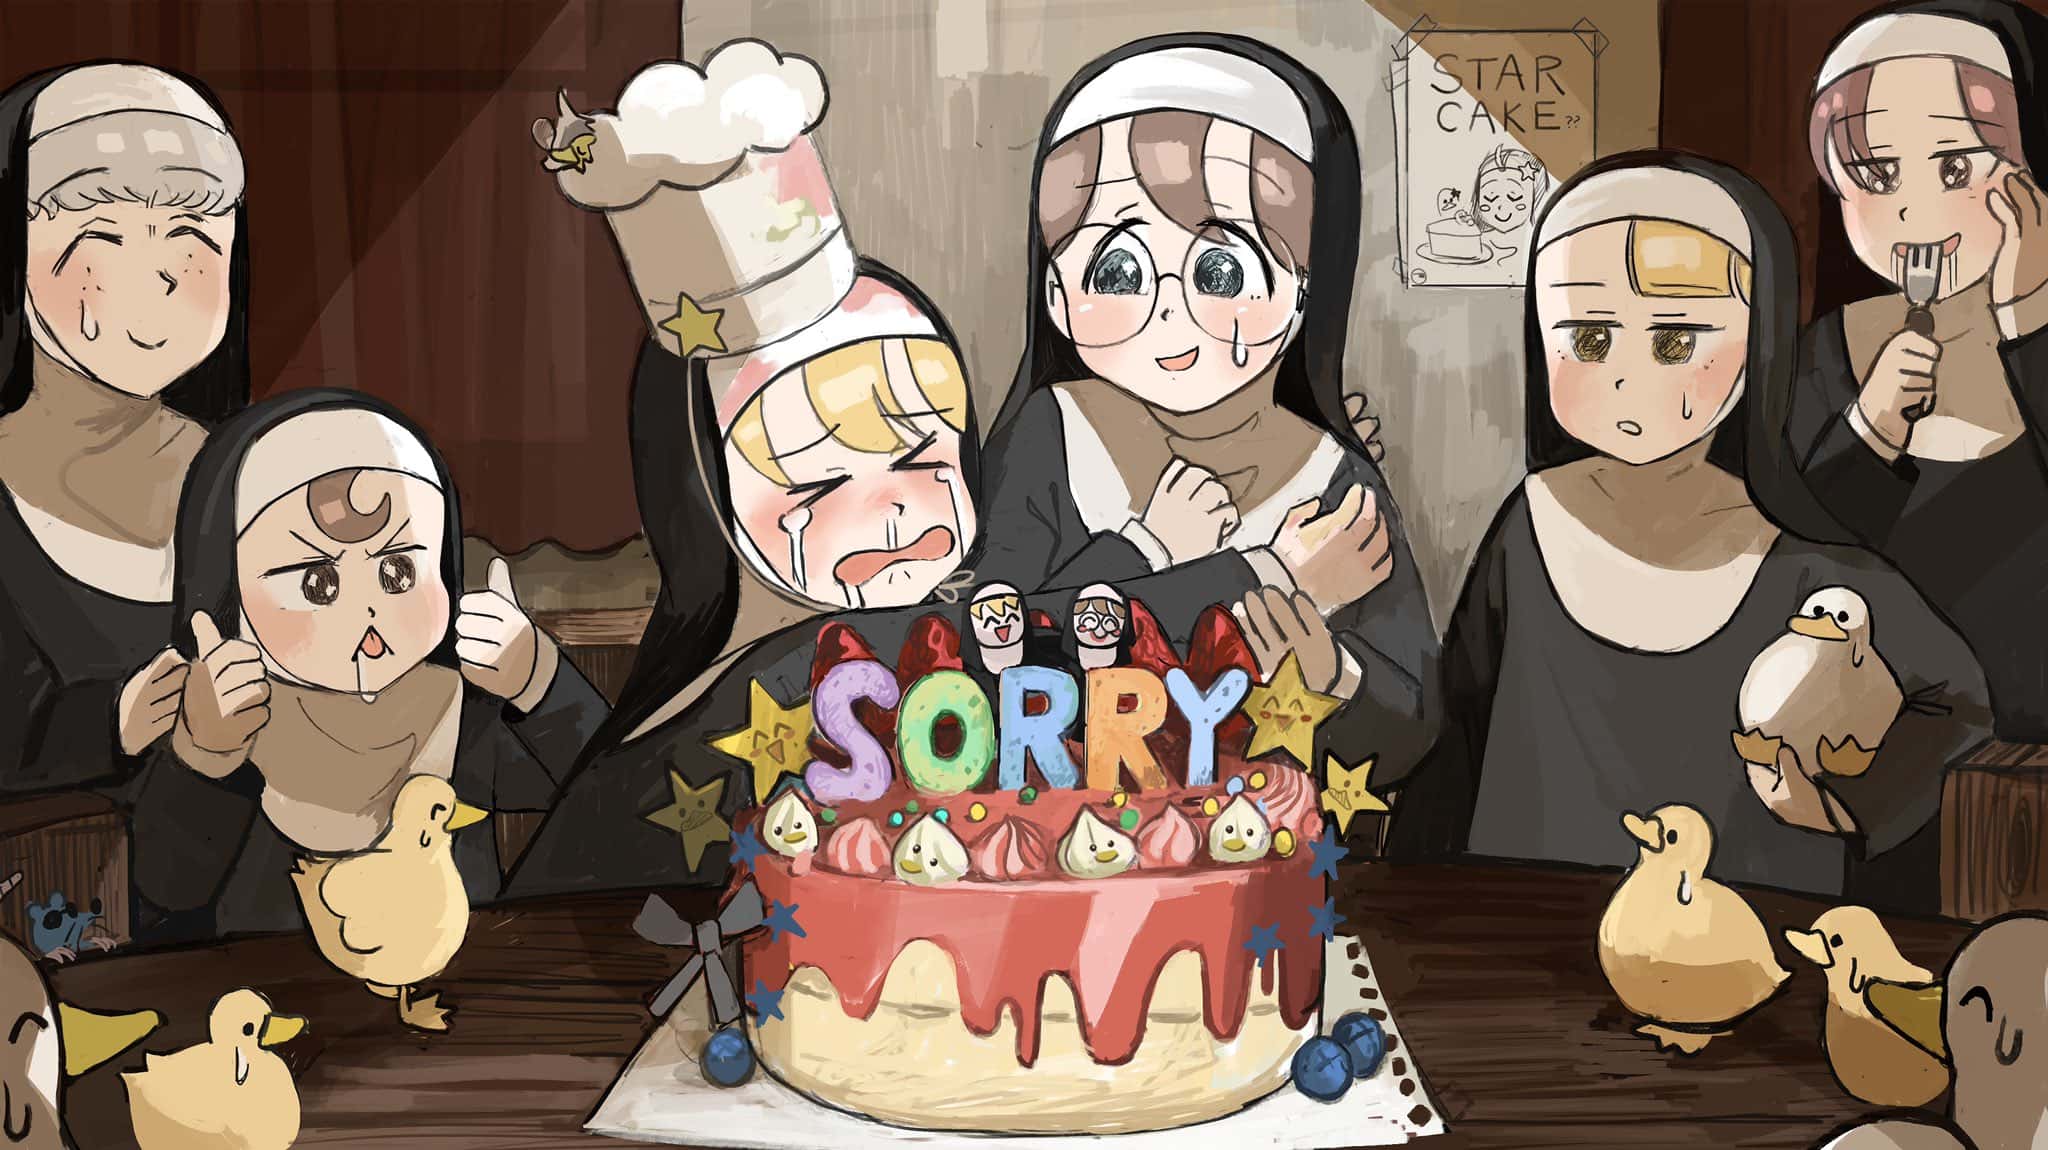 1 - 337 Она испекла торт для того что бы извинится перед ней